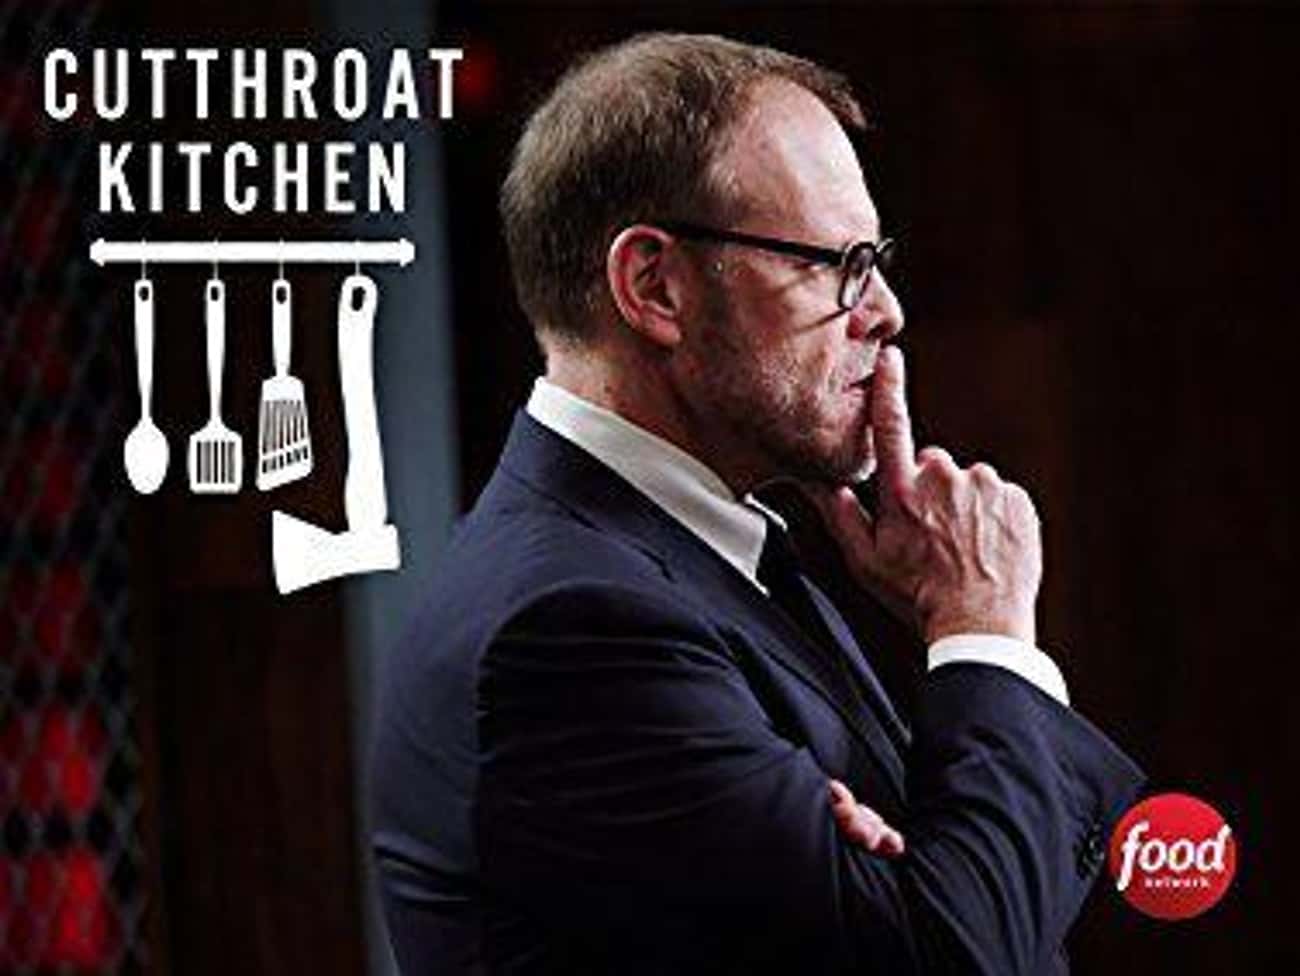 Cutthroat Kitchen Season 10 Photo U1?auto=format&q=60&fit=crop&fm=pjpg&dpr=2&w=650